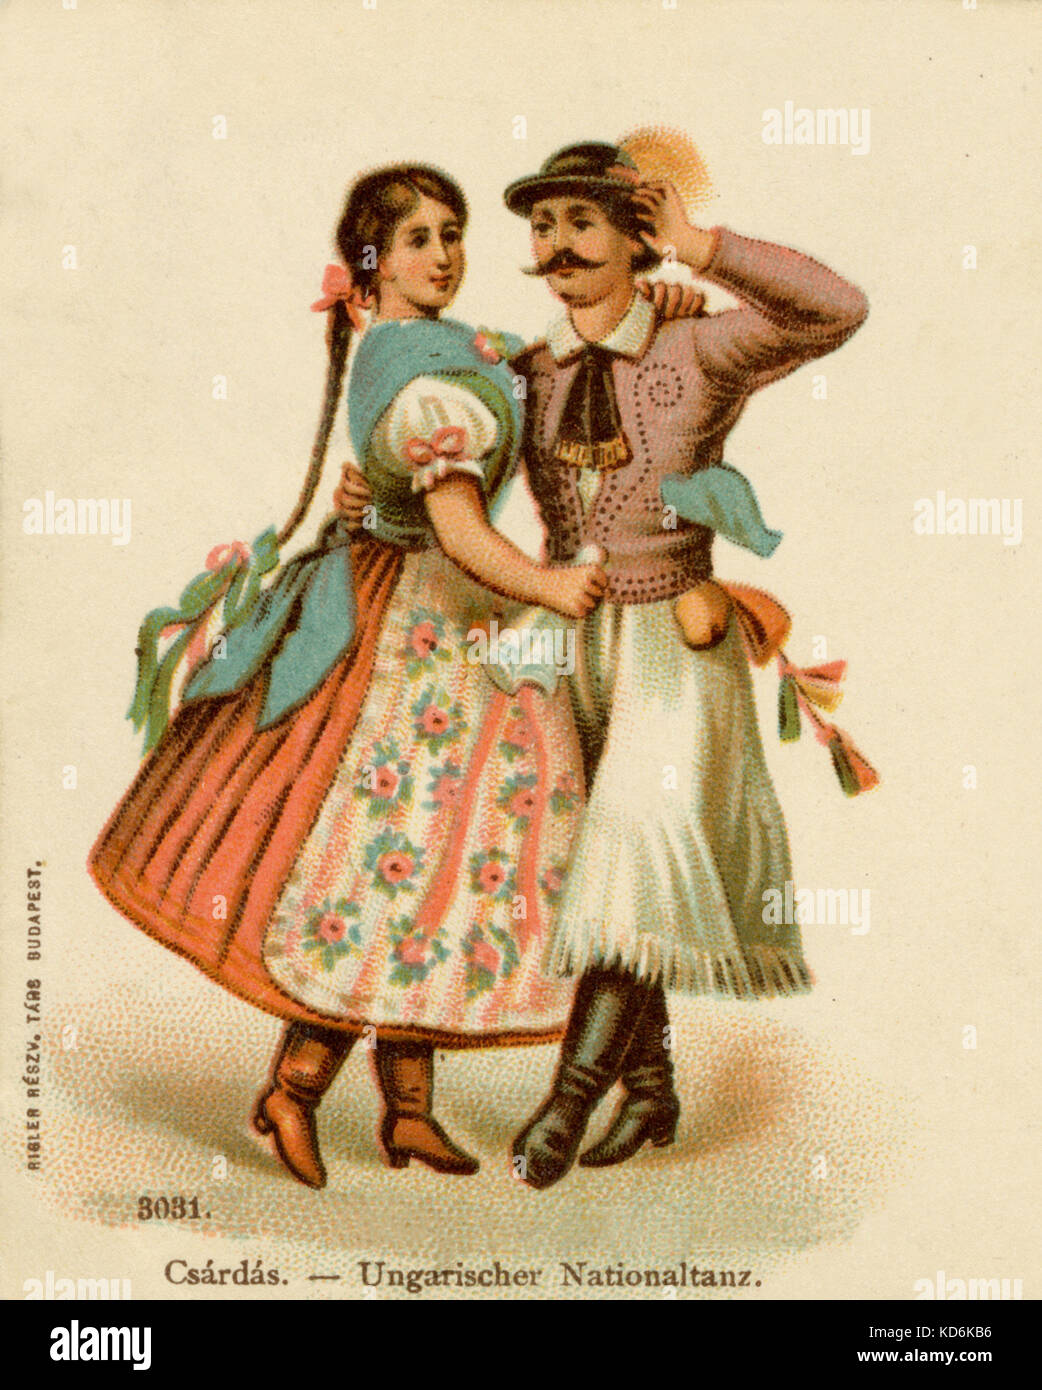 La danse de couple danse national hongrois, en costume traditionnel. Fin 19ème/début 20ème siècle (carte postale peinte posté Avril 1900). Banque D'Images